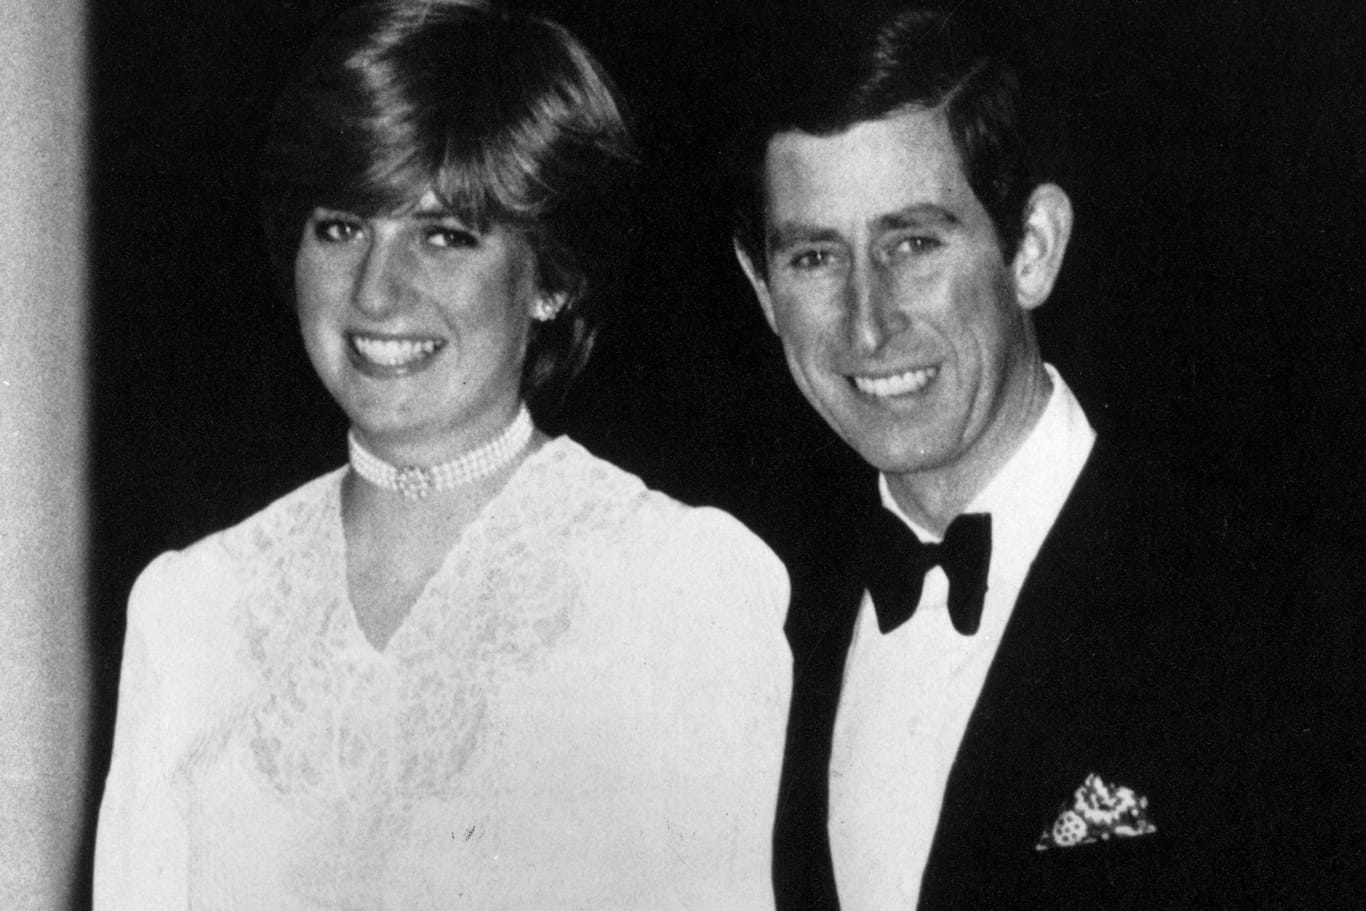 Diana und Charles im Februar 1981, vor ihrer Hochzeit: Hier war Diana noch Lady Diana.